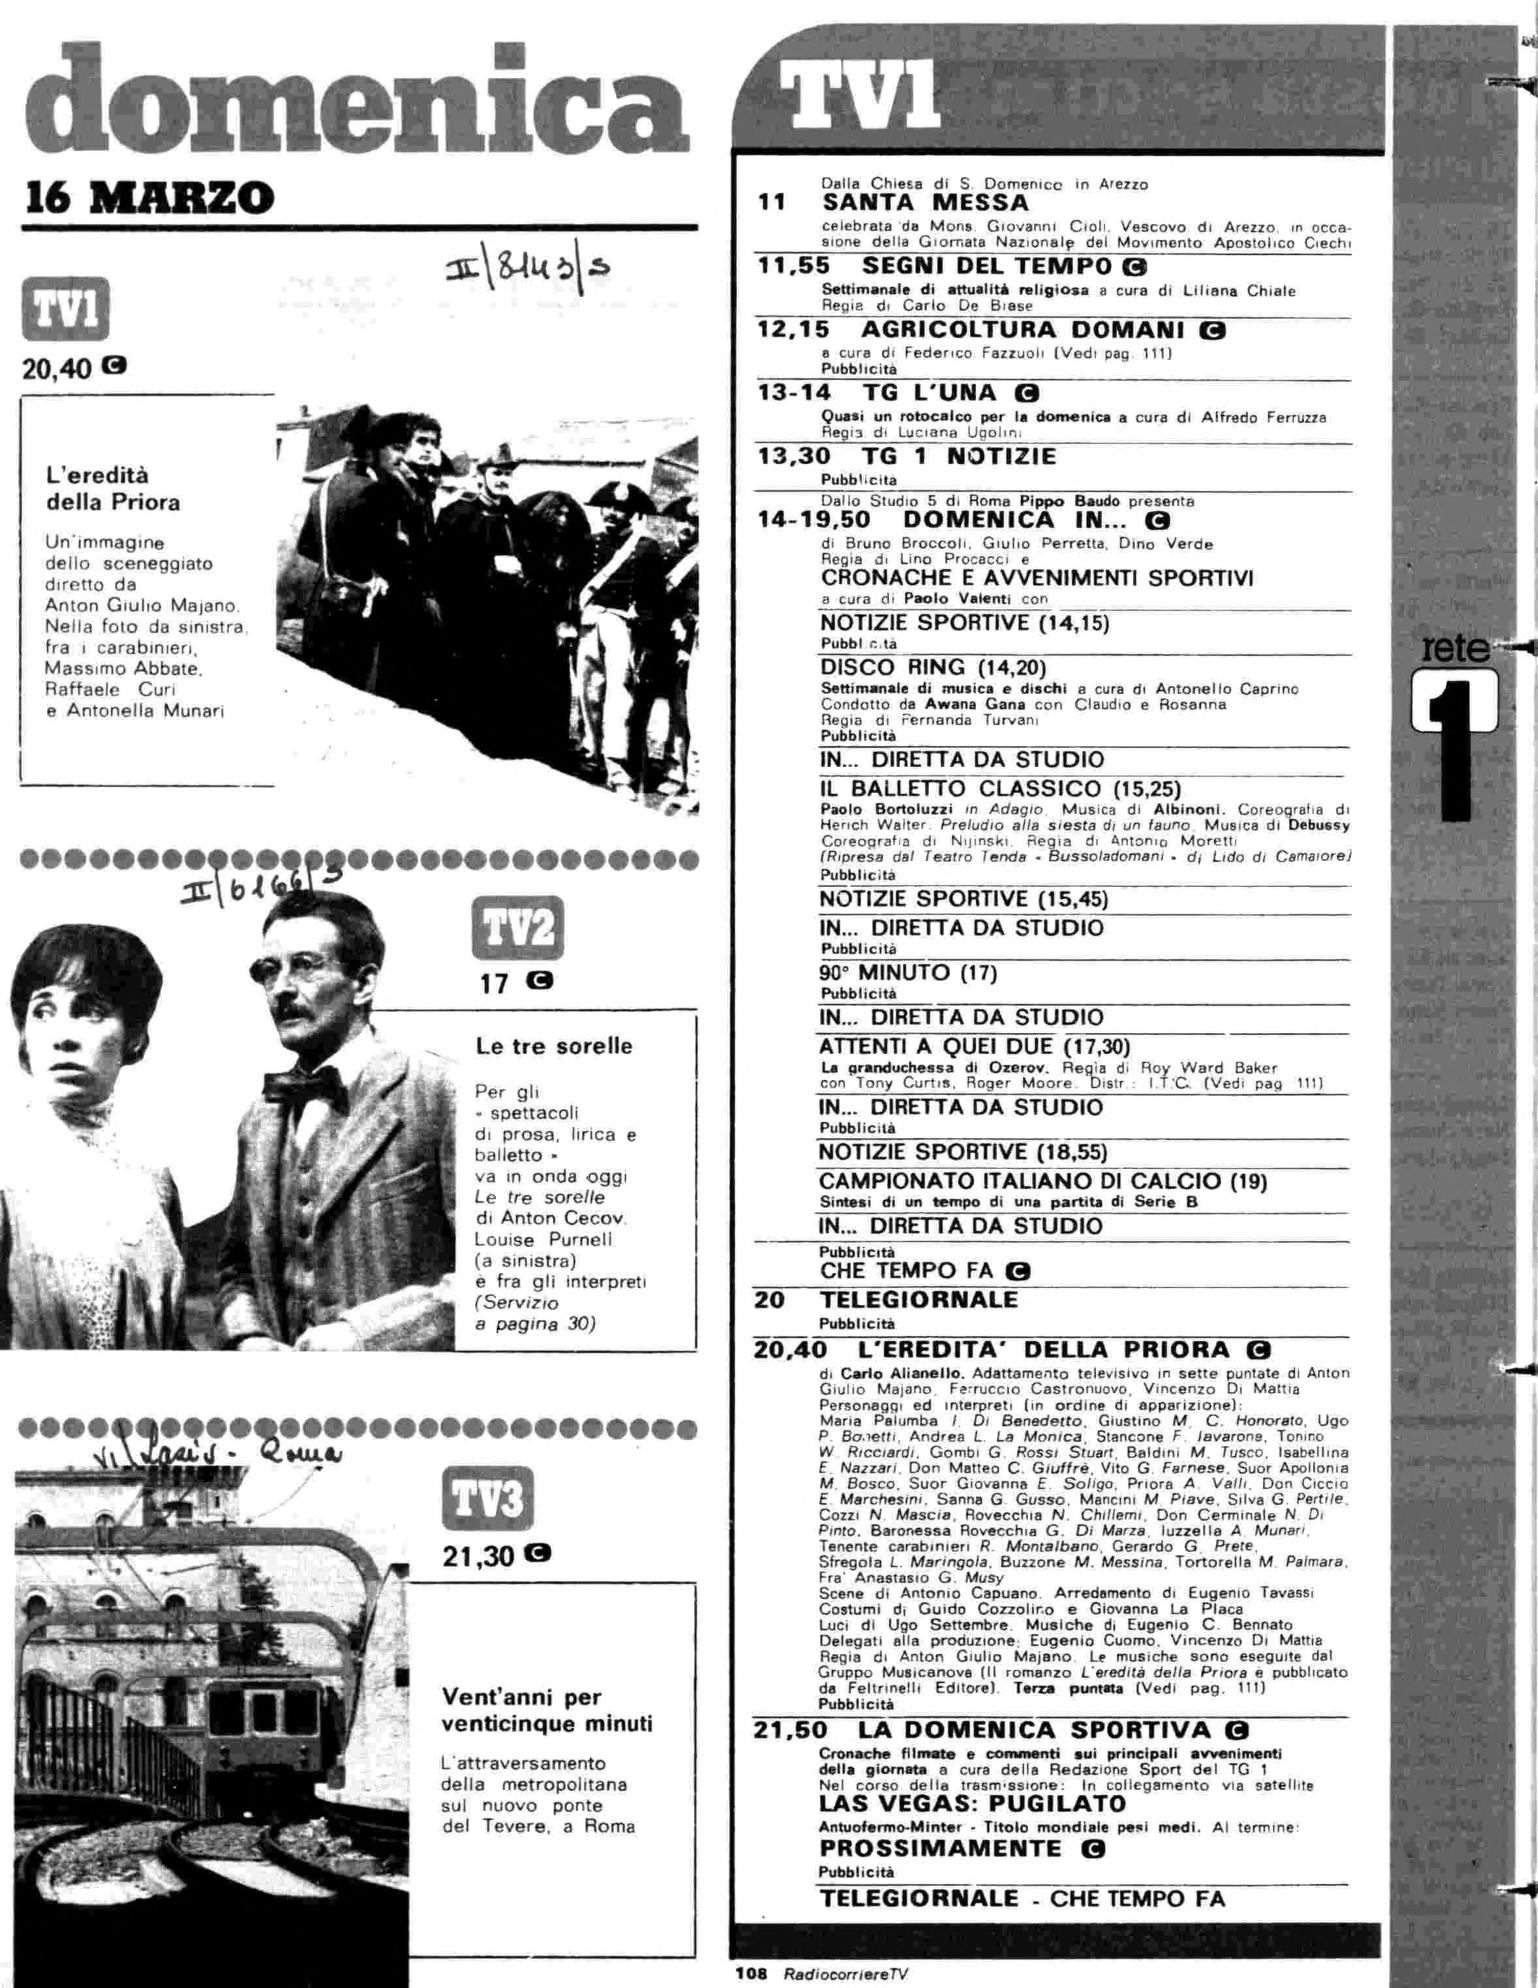 RC-1980-12_0107.jp2&id=Radiocorriere-198